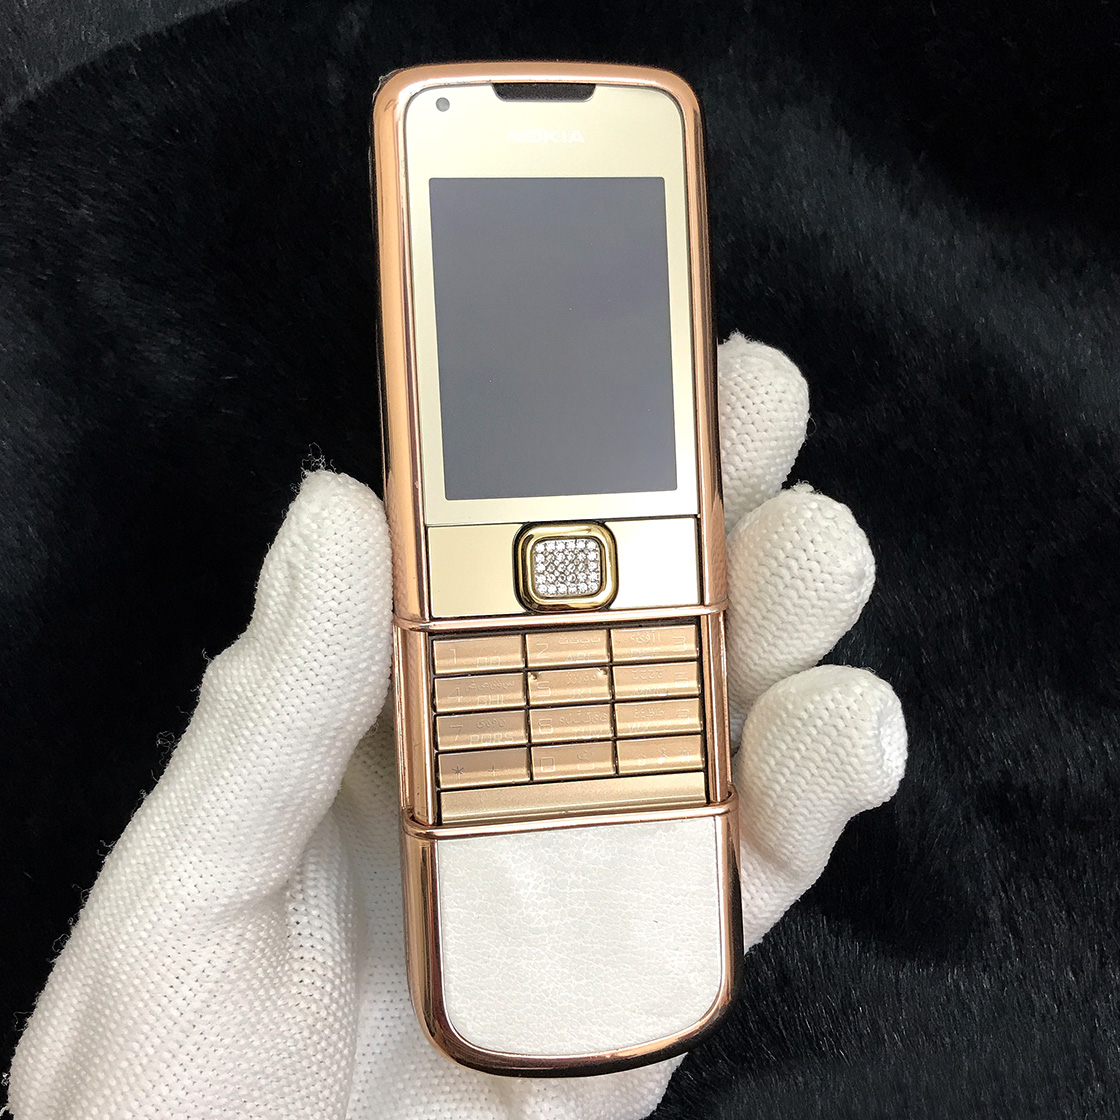 Nokia 8800 arte rose gold (vàng hồng) zin chính hãng nguyên bản. – Điện  thoại cổ đẳng cấp